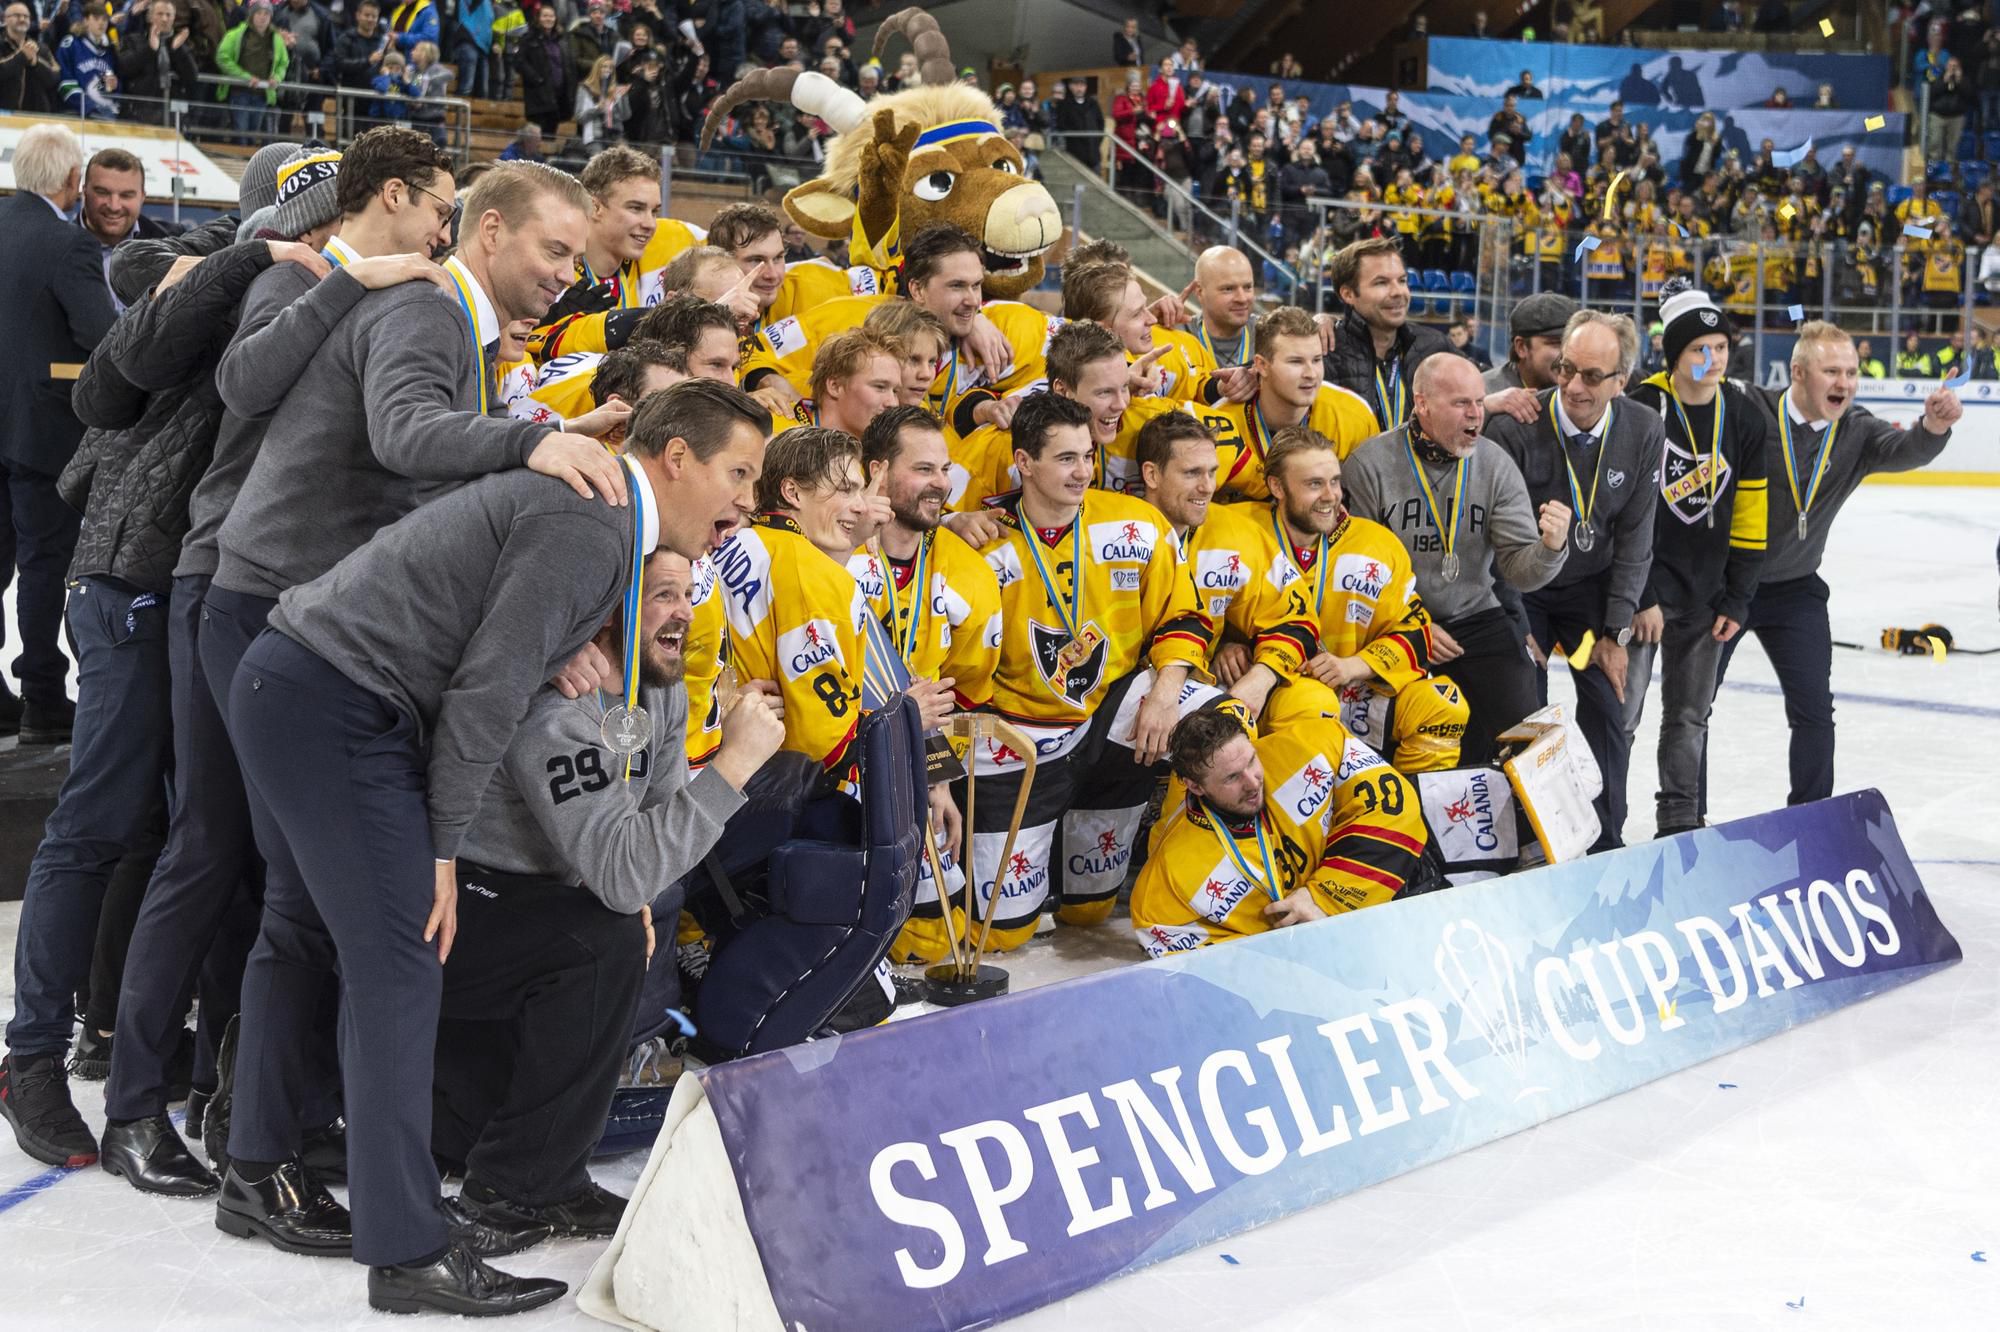 Hokejisti KalPa Kuopio sa radujú po víťazstve vo finále Spenglerovho pohára